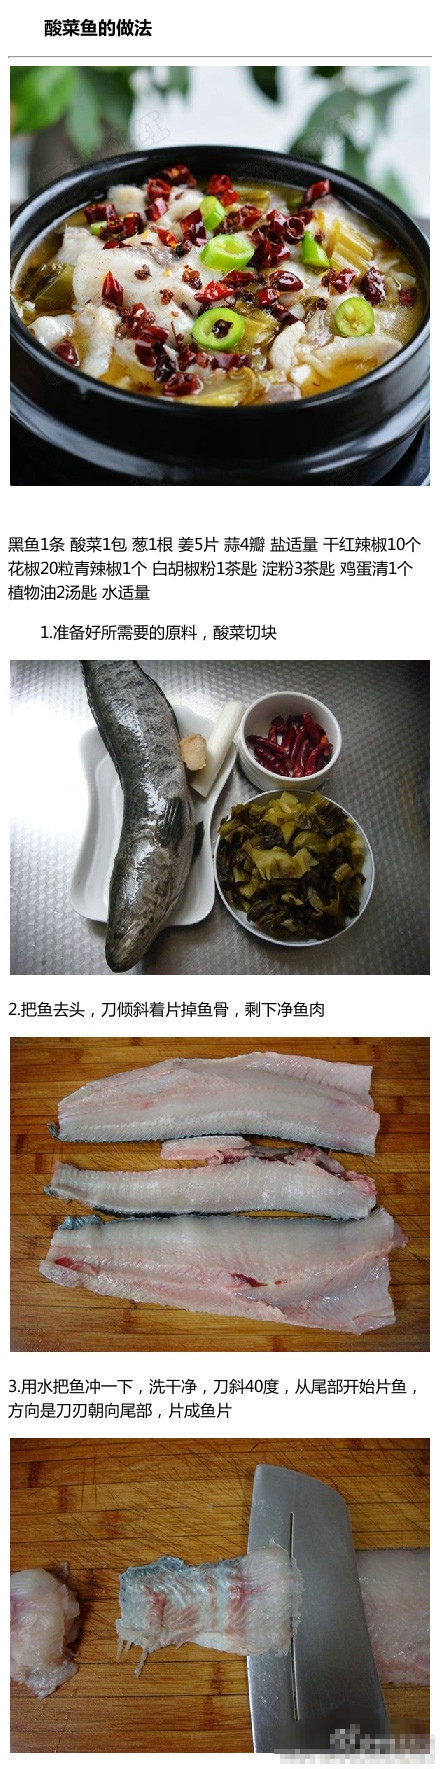 酸菜鱼的做法 自己动手也能做出美味的酸菜鱼